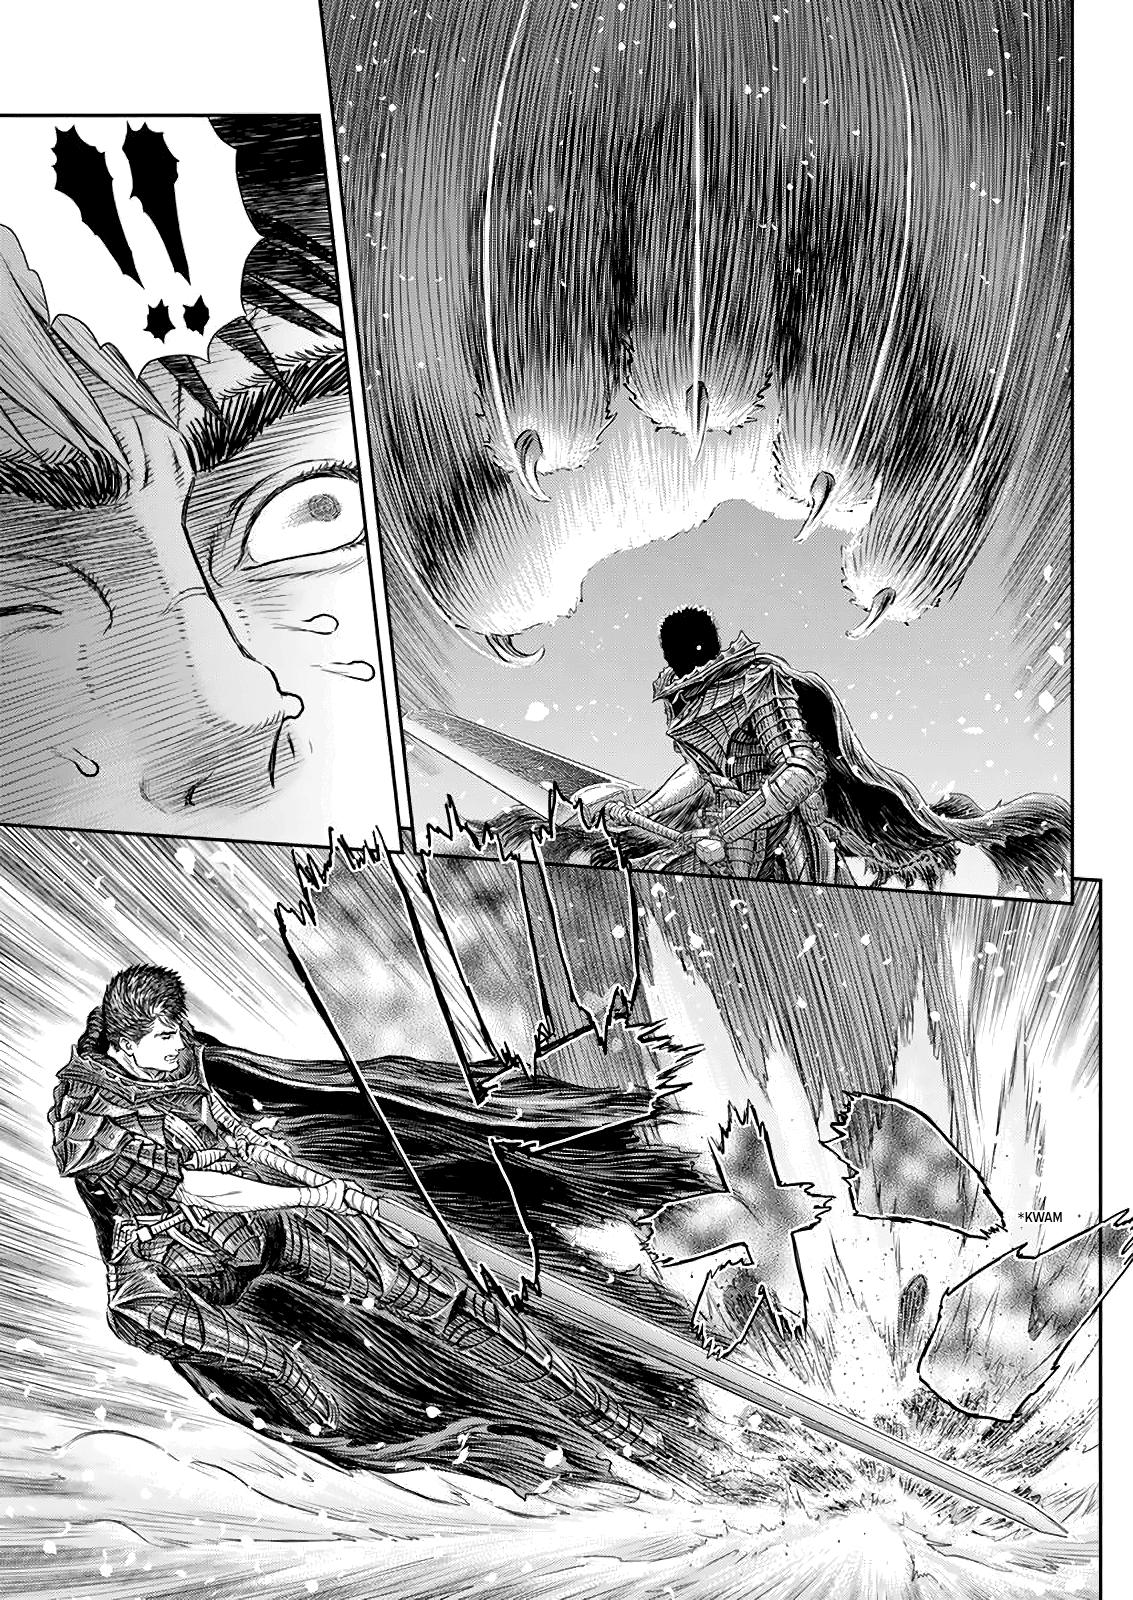 Berserk Manga Chapter 366 image 13